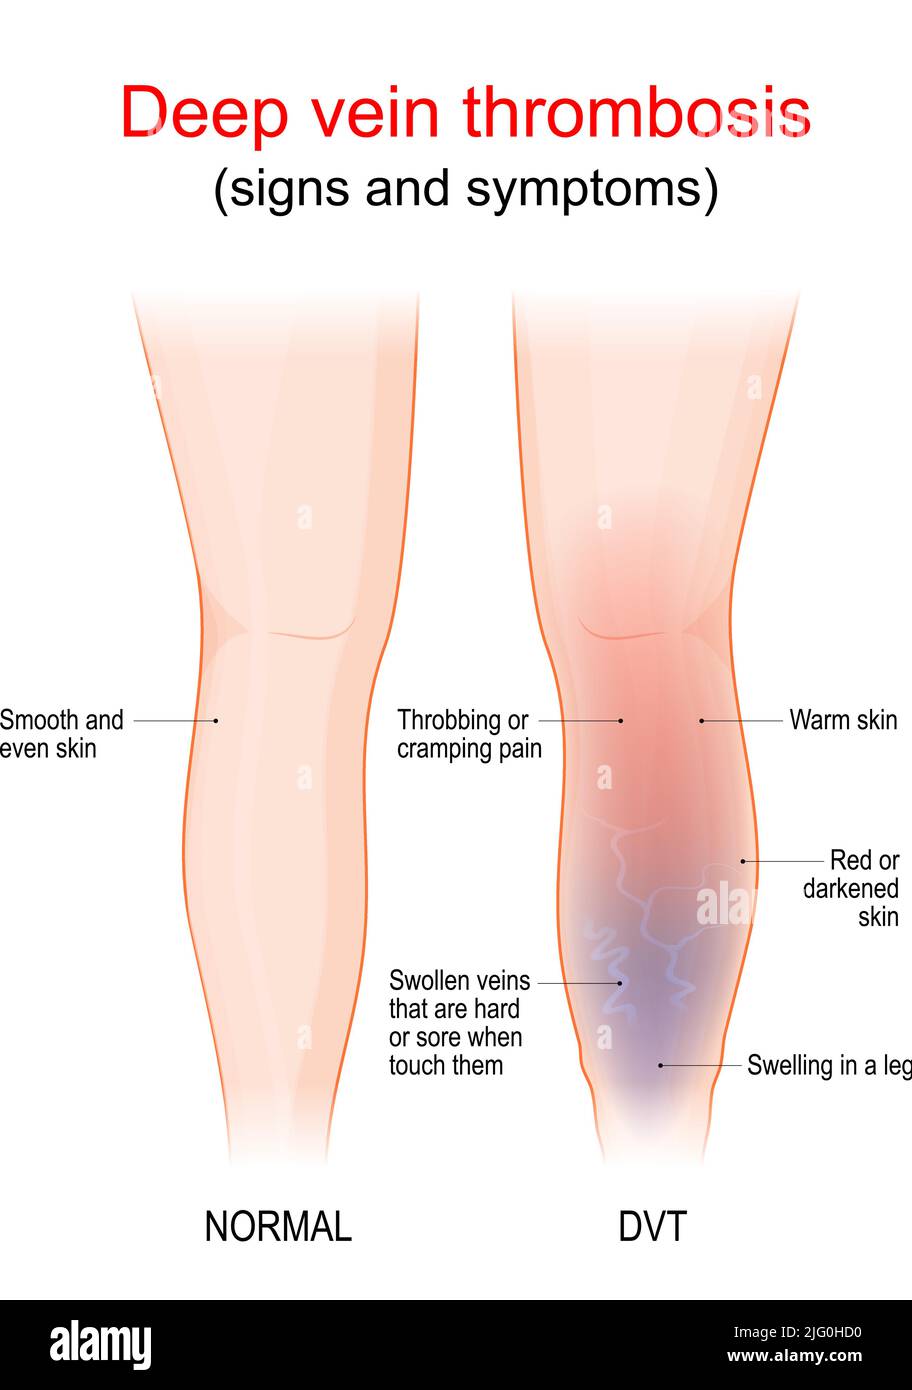 la trombosi venosa profonda è un coagulo di sangue in una vena, di solito la gamba. Gamba e gamba sane con TVP. Segno e sintomi di tromboflebite. Vaso sanguigno Illustrazione Vettoriale